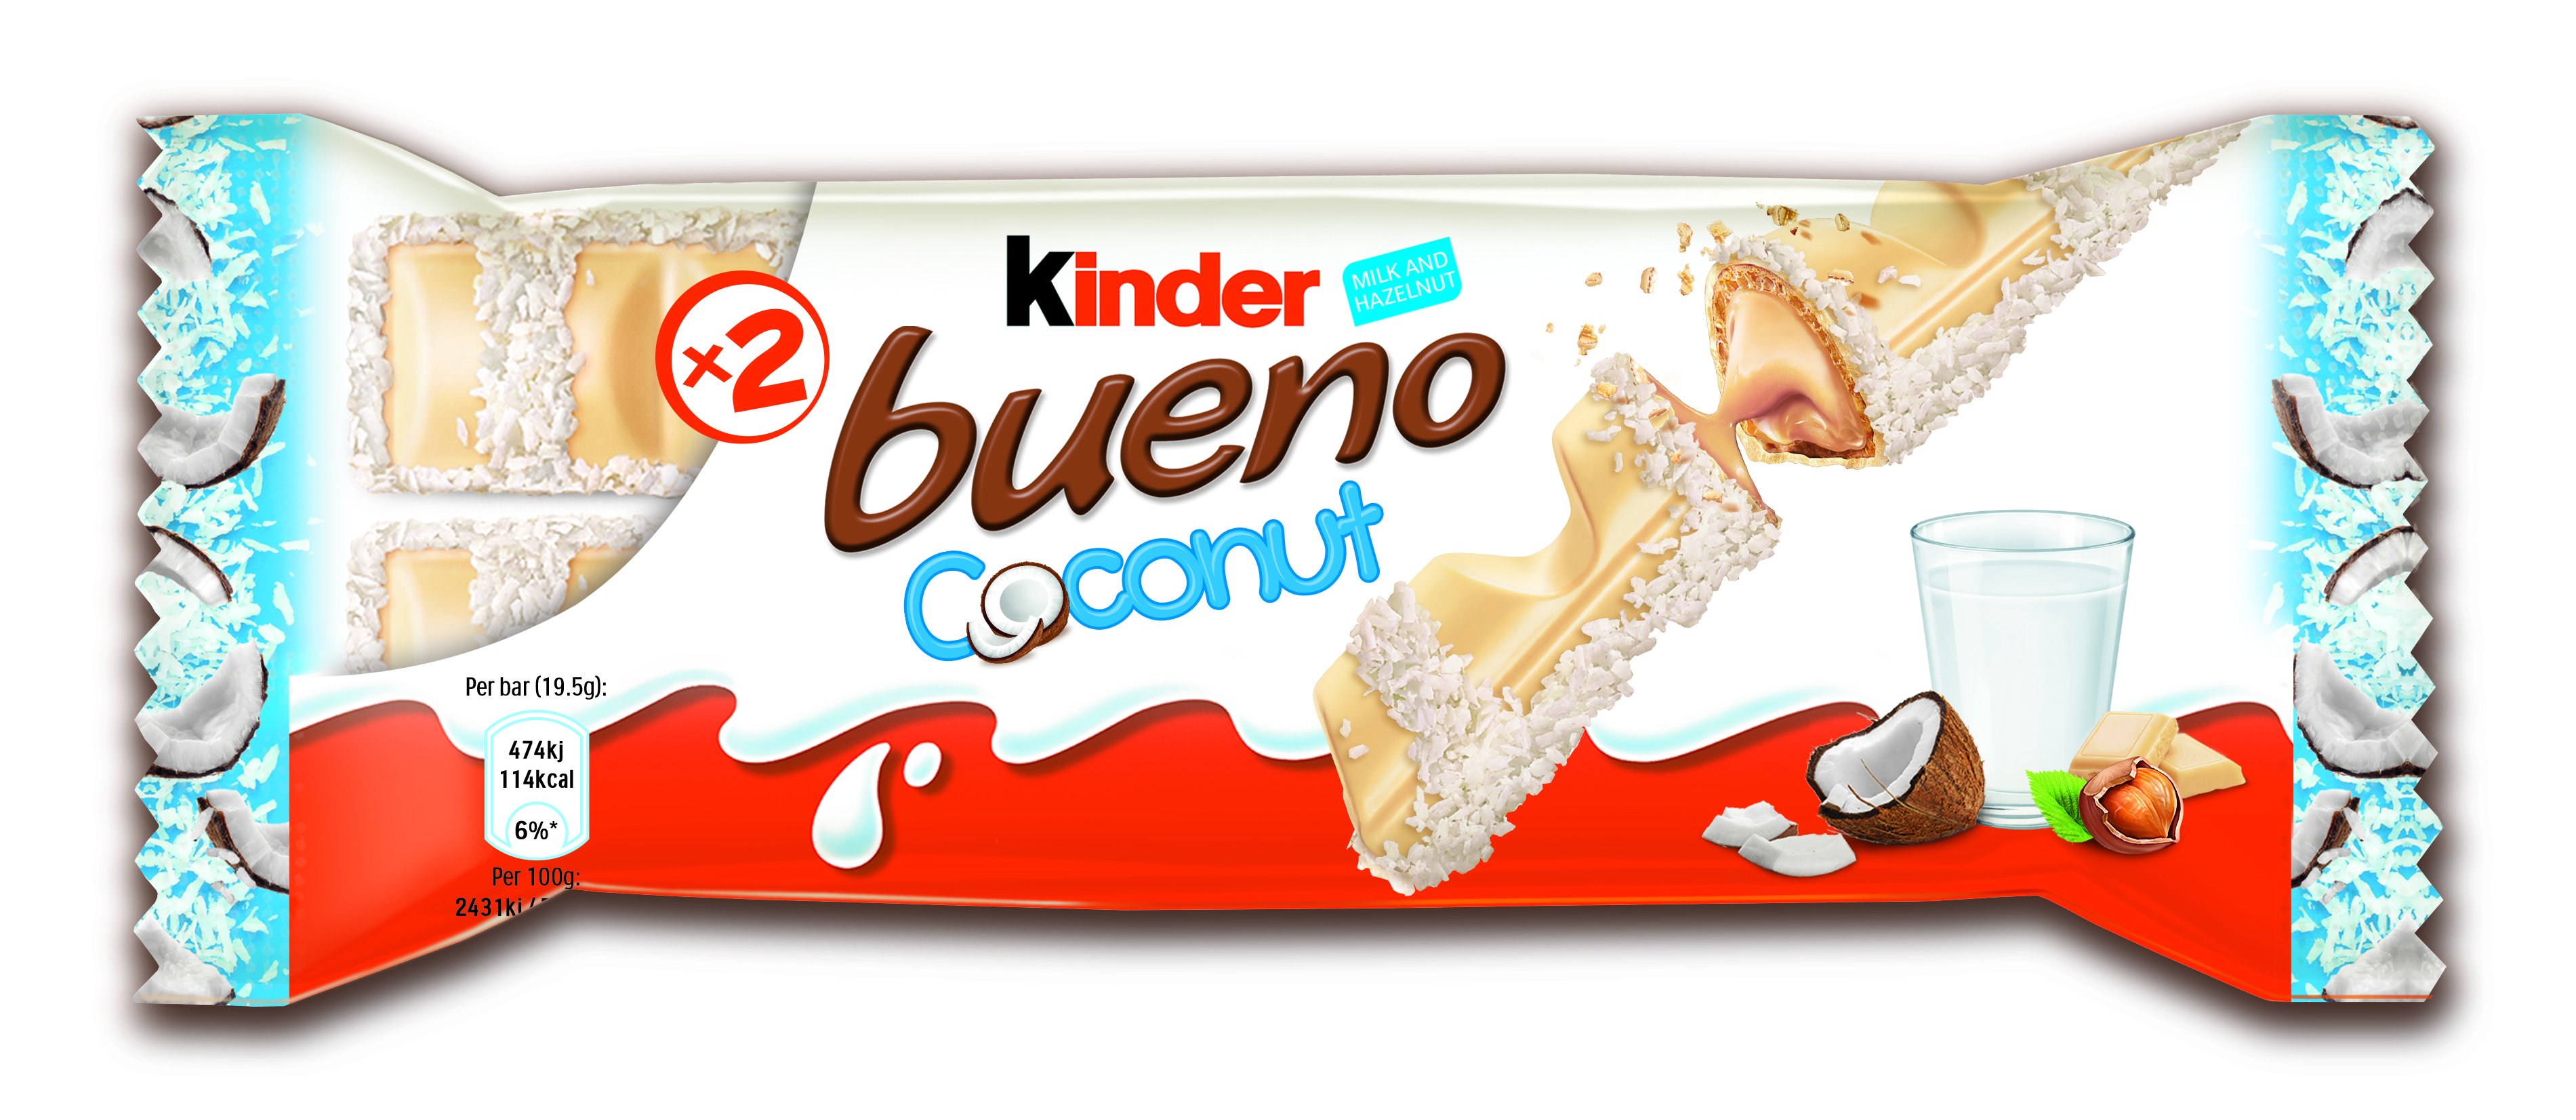 Ferrero launches Kinder Bueno Coconut